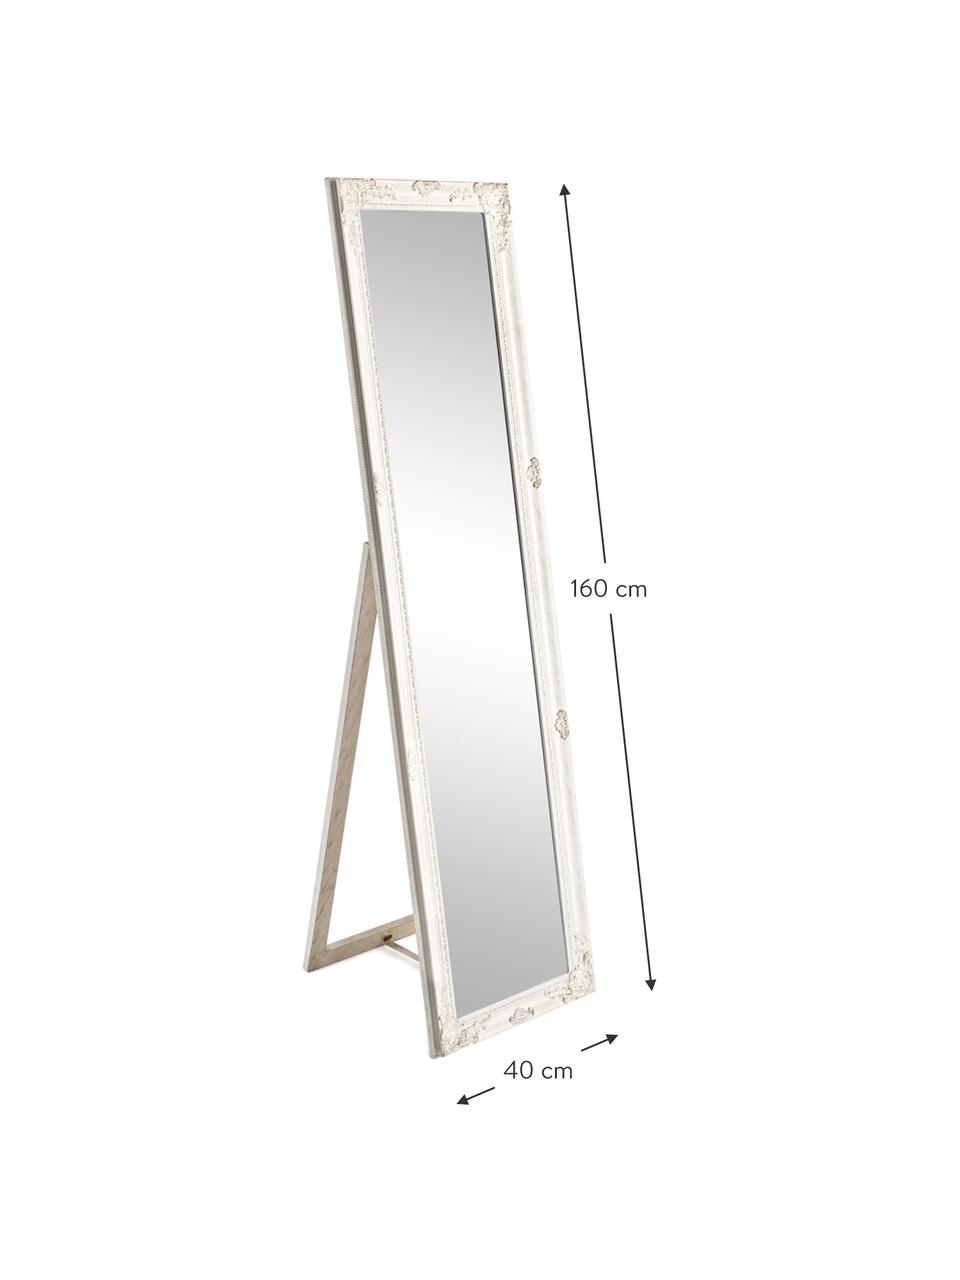 Standspiegel Miro mit weissem Rahmen, Rahmen: Holz, beschichtet, Spiegelfläche: Spiegelglas, Weiss, 40 x 160 cm